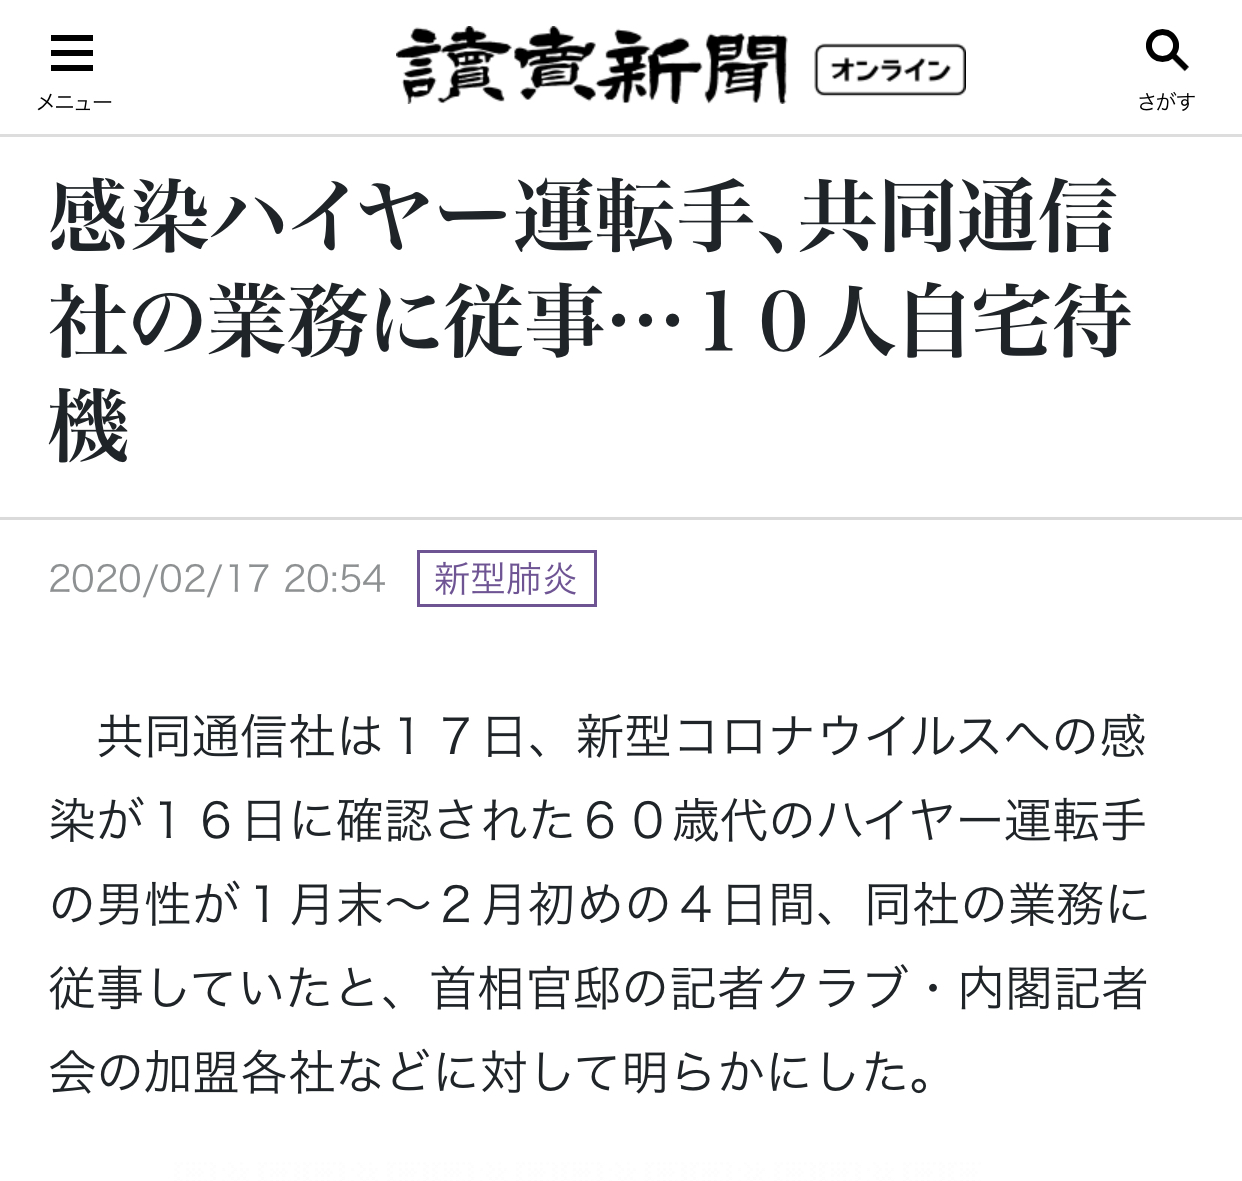 10人隔离 日本共同社向首相官邸记者俱乐部等相关单位通知情况